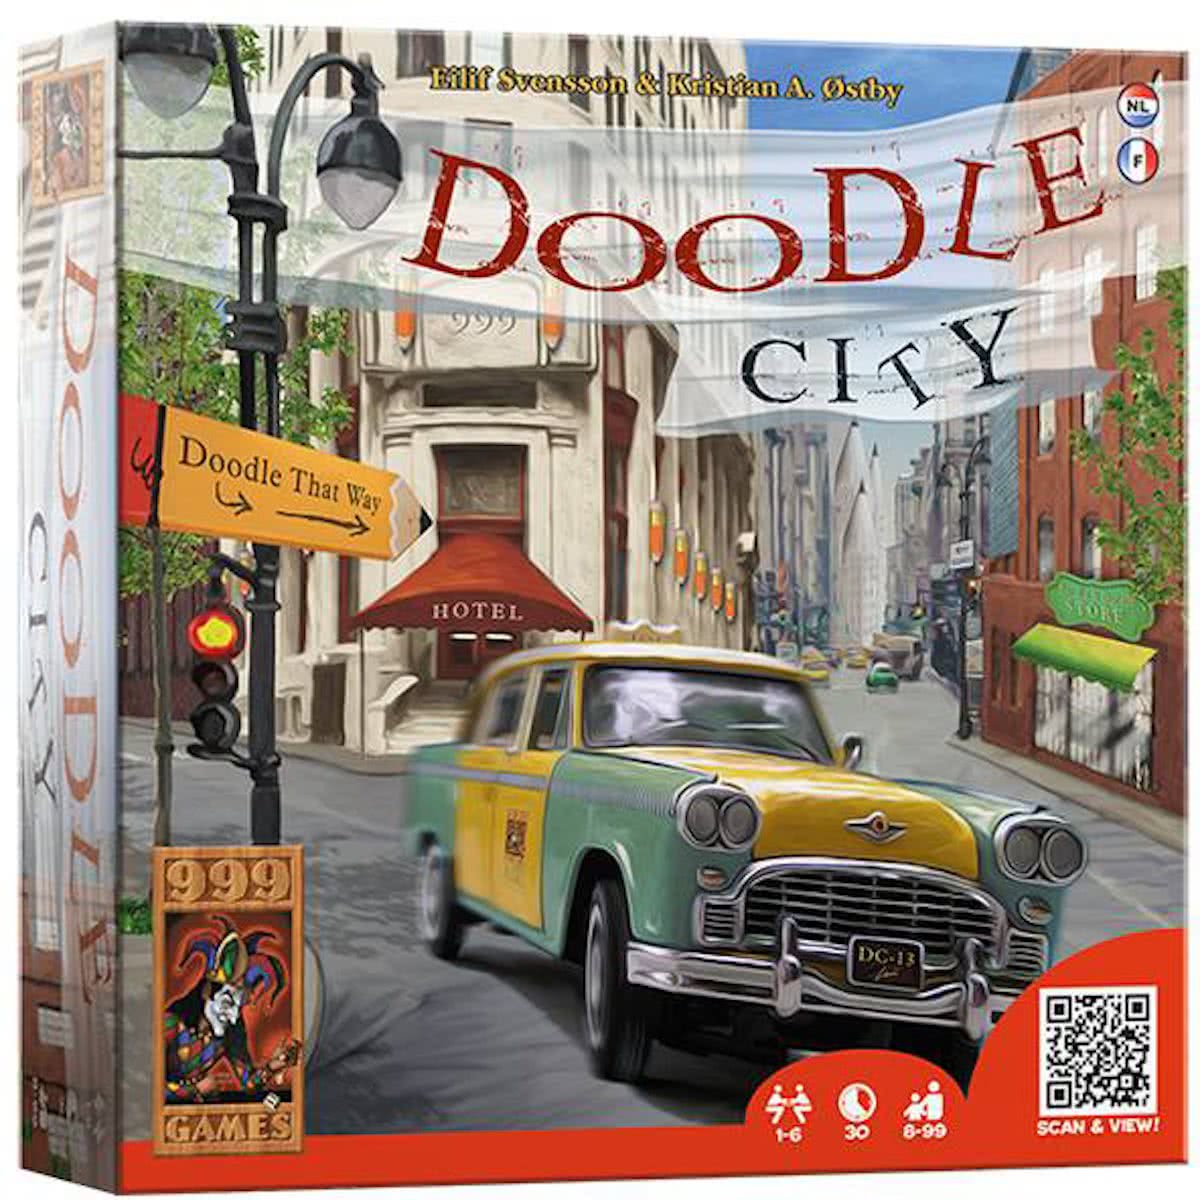 Doodle City description reviews